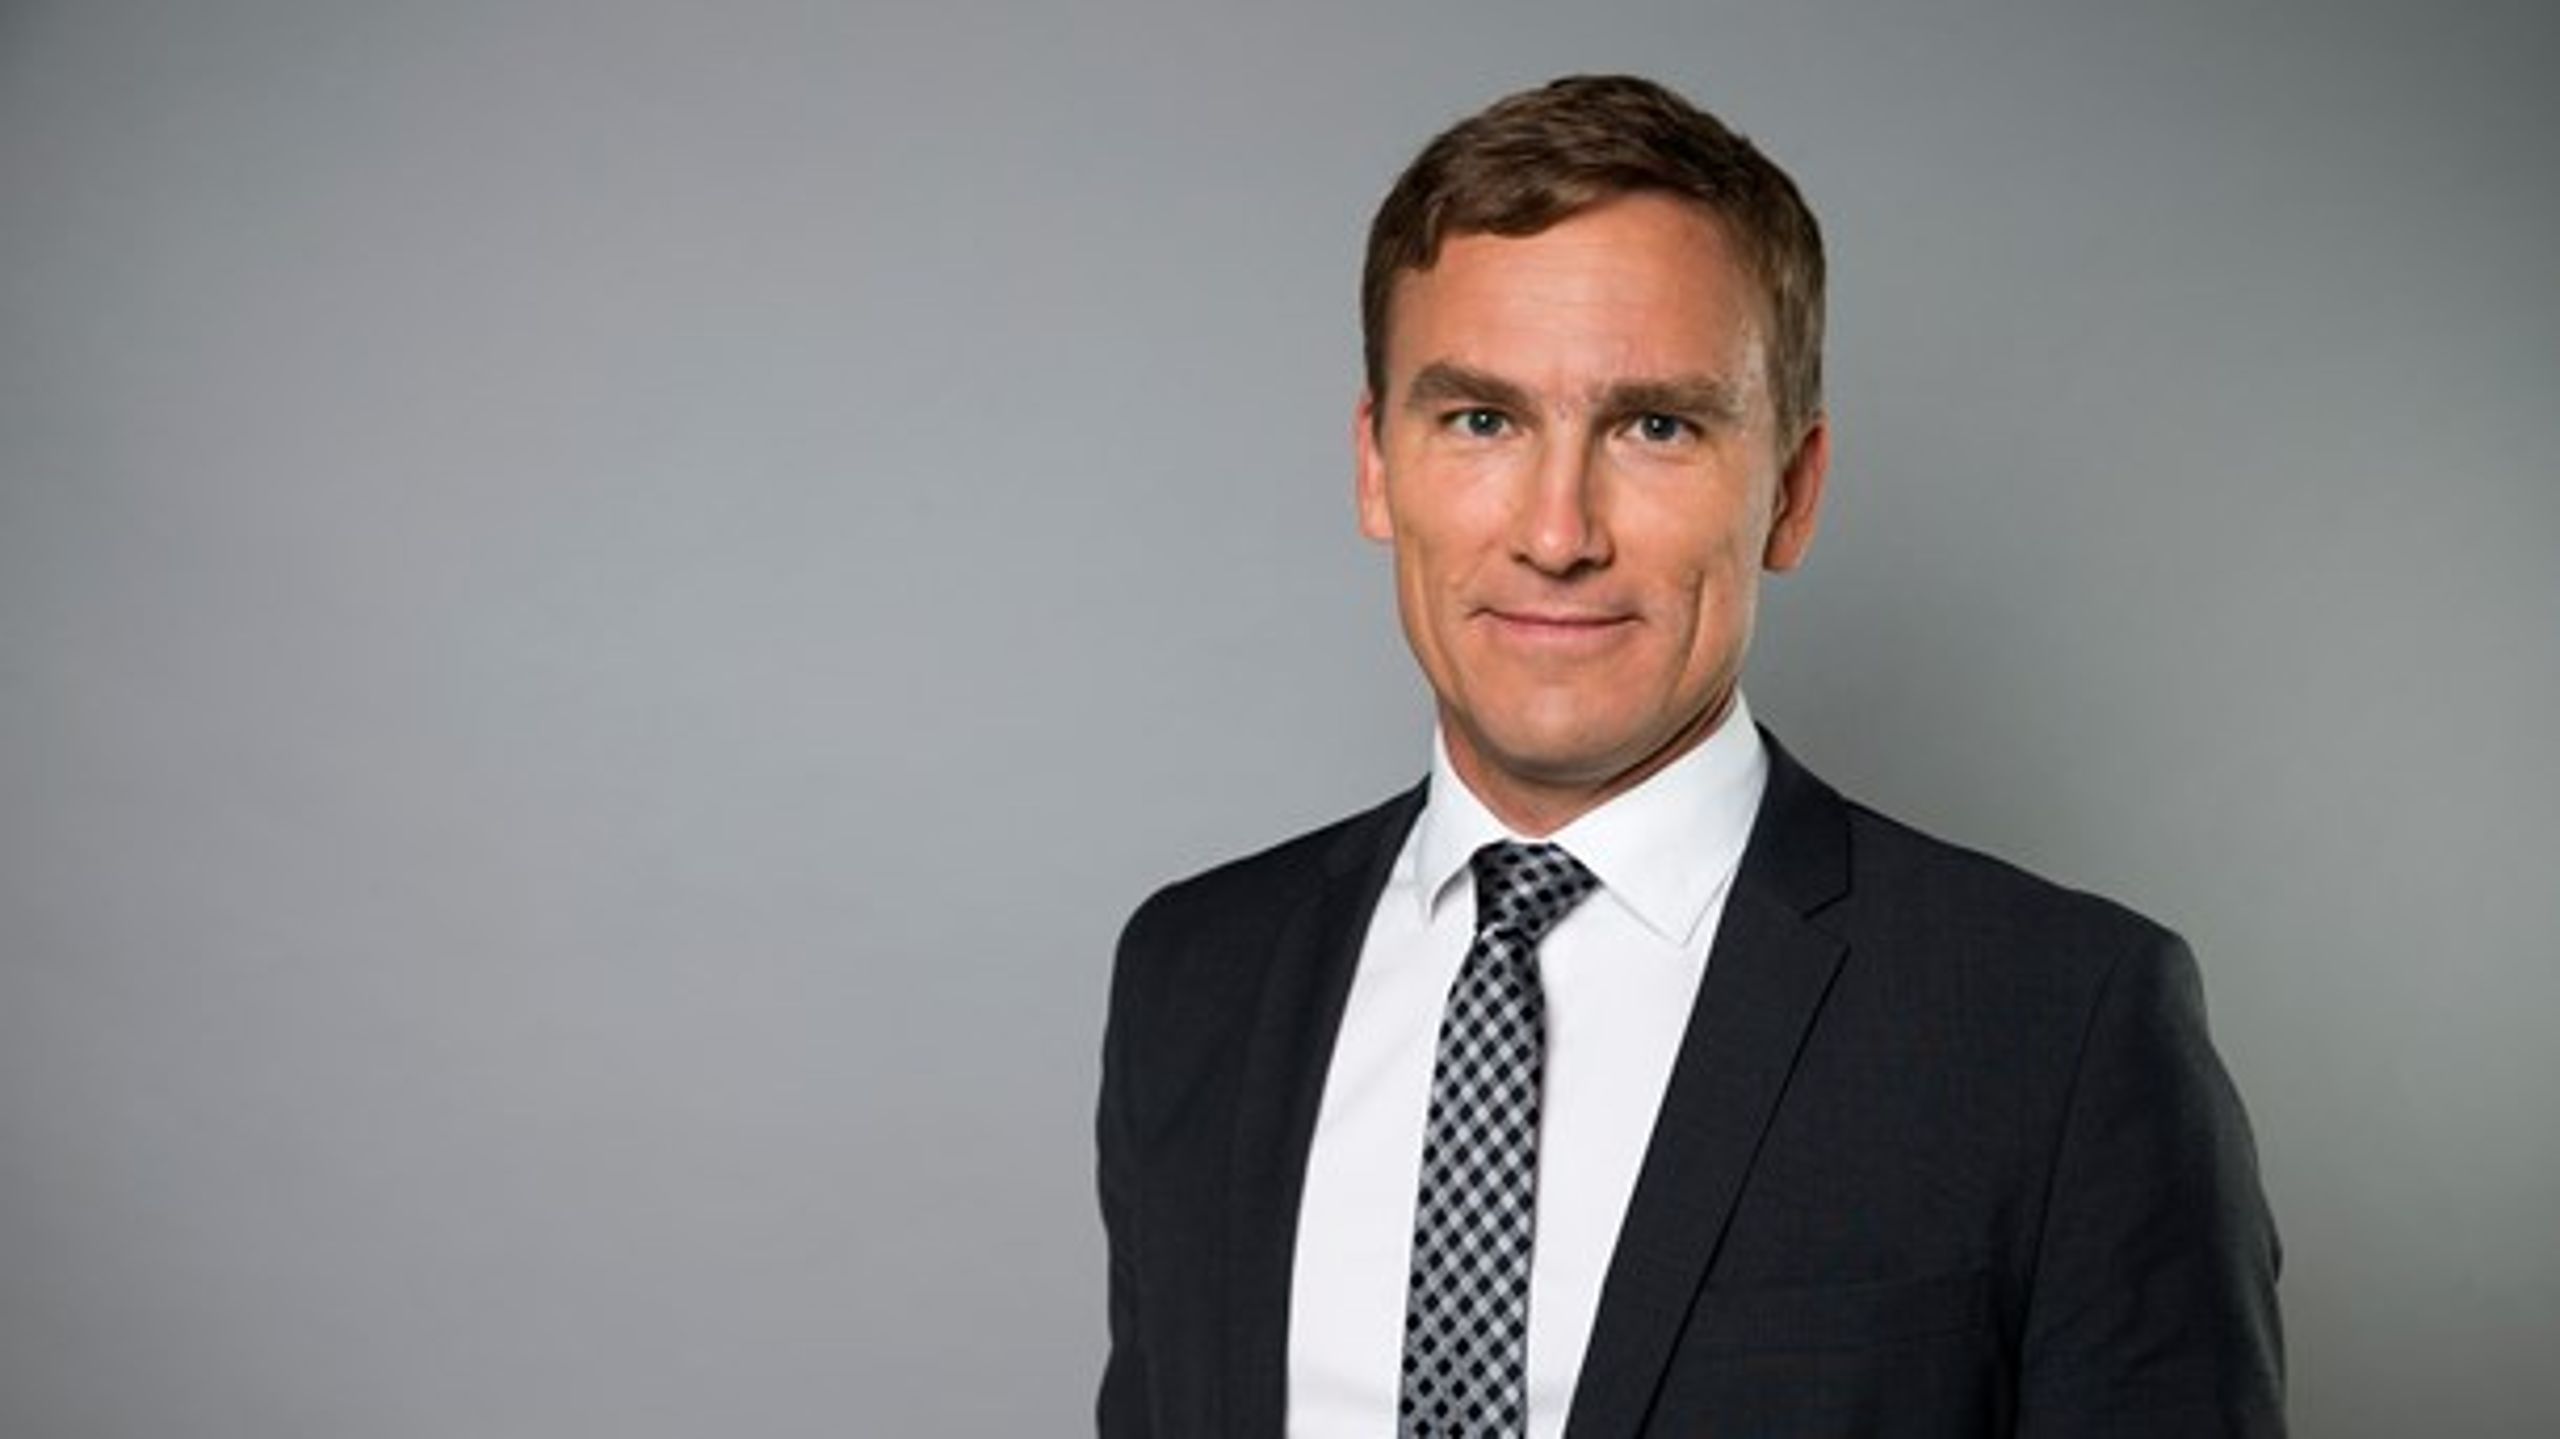 Per Ängquist är ny generaldirektör på Kemikalieinspektionen. Han har en bakgrund inom Miljöpartiet och Naturskyddsföreningen.